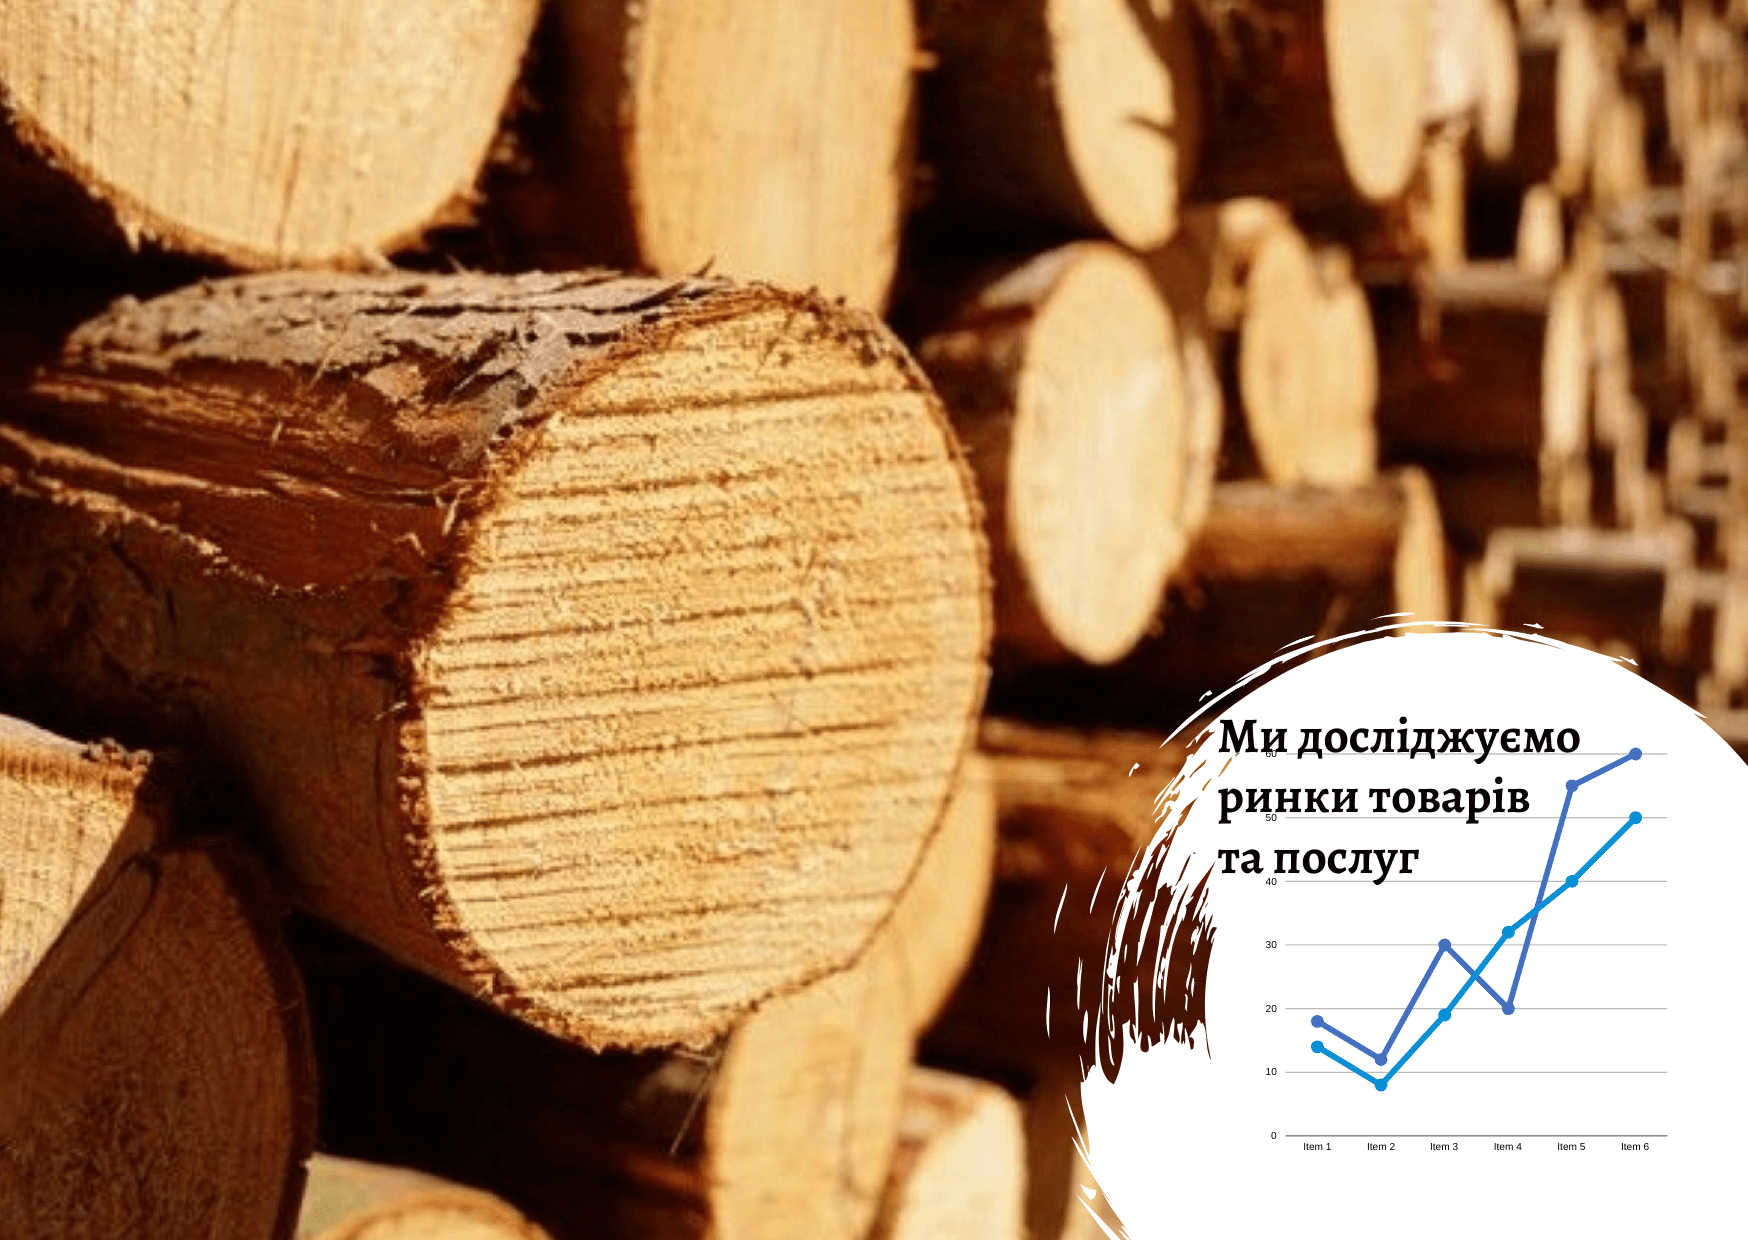 Ukrainian timber harvesting market: current state 